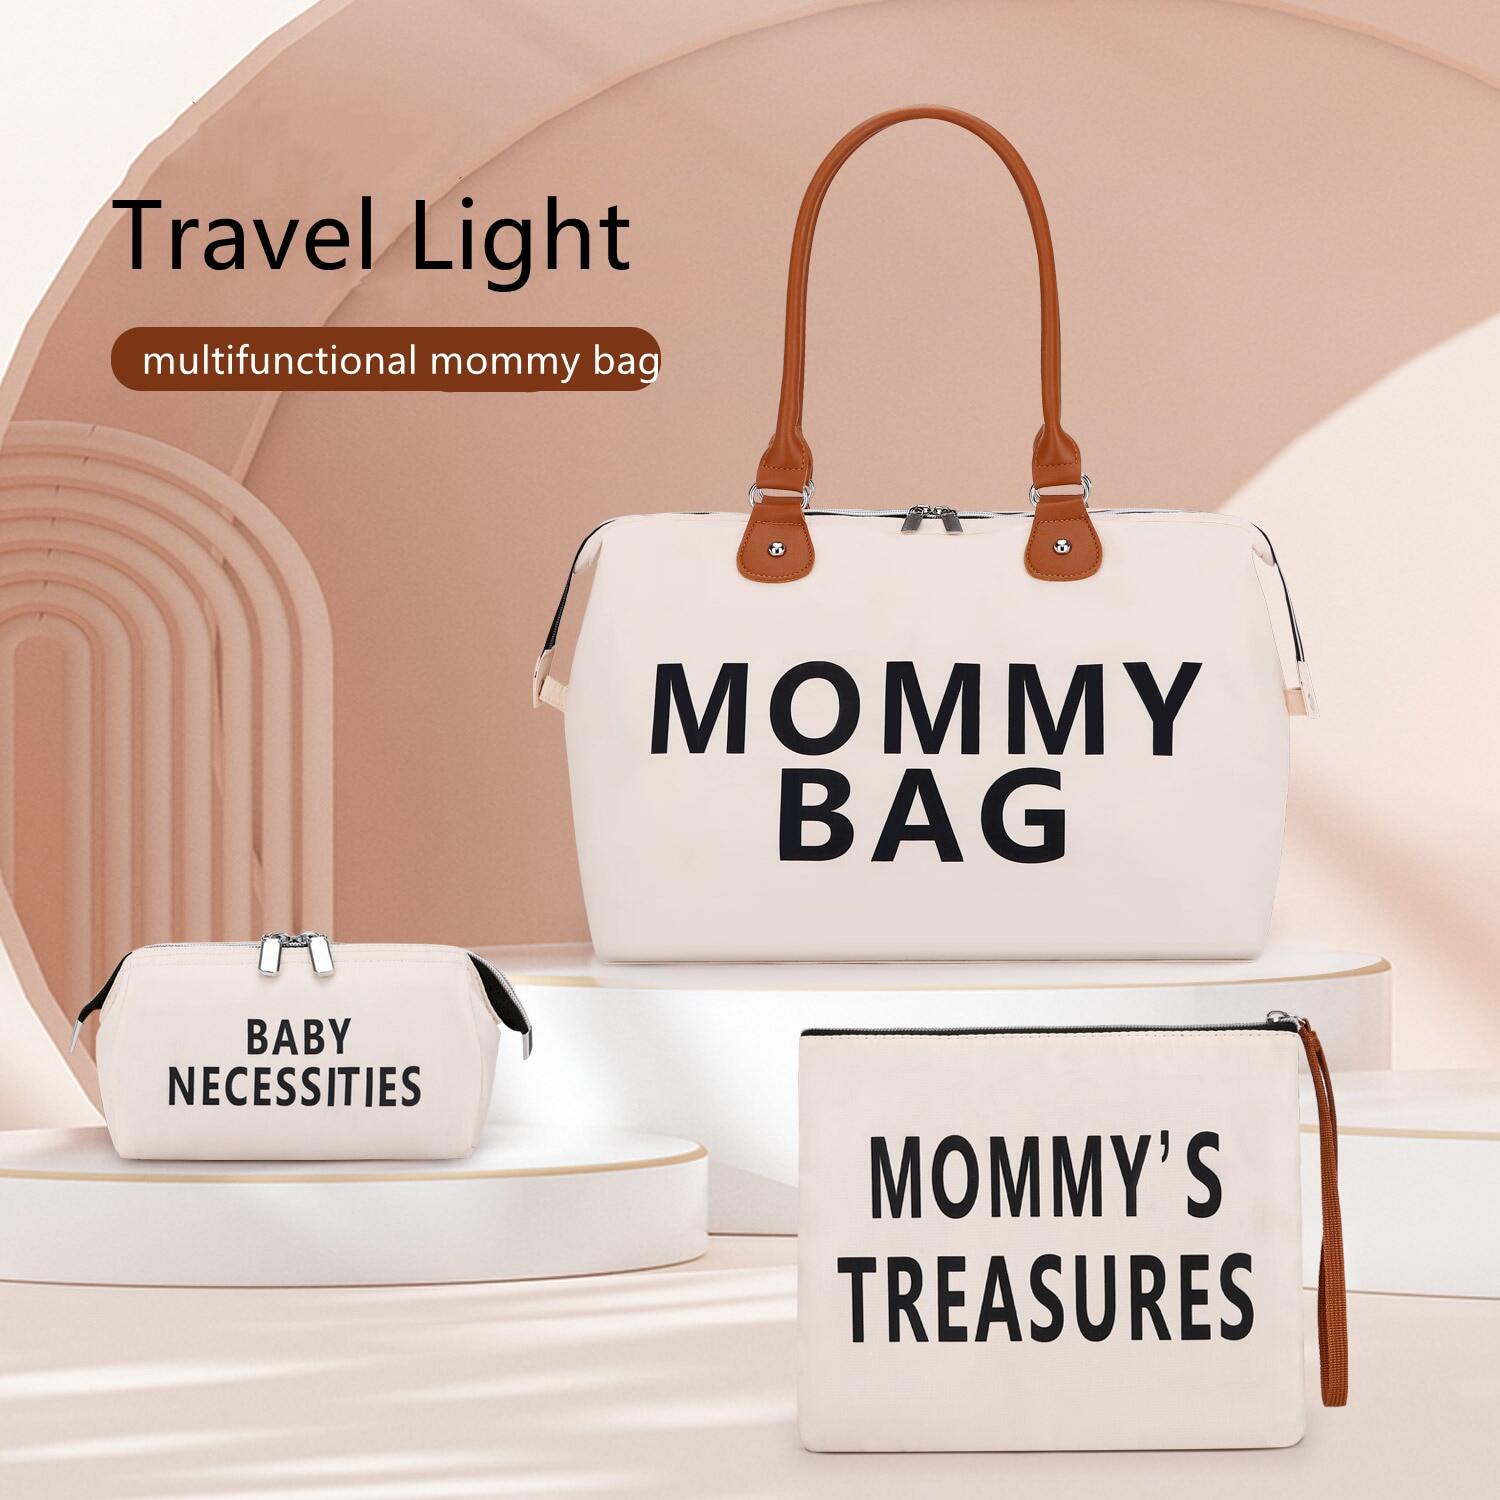 Đèn Du Lịch Túi Mommy Bag xách tay Túi dành cho người bầu sữa chai túi